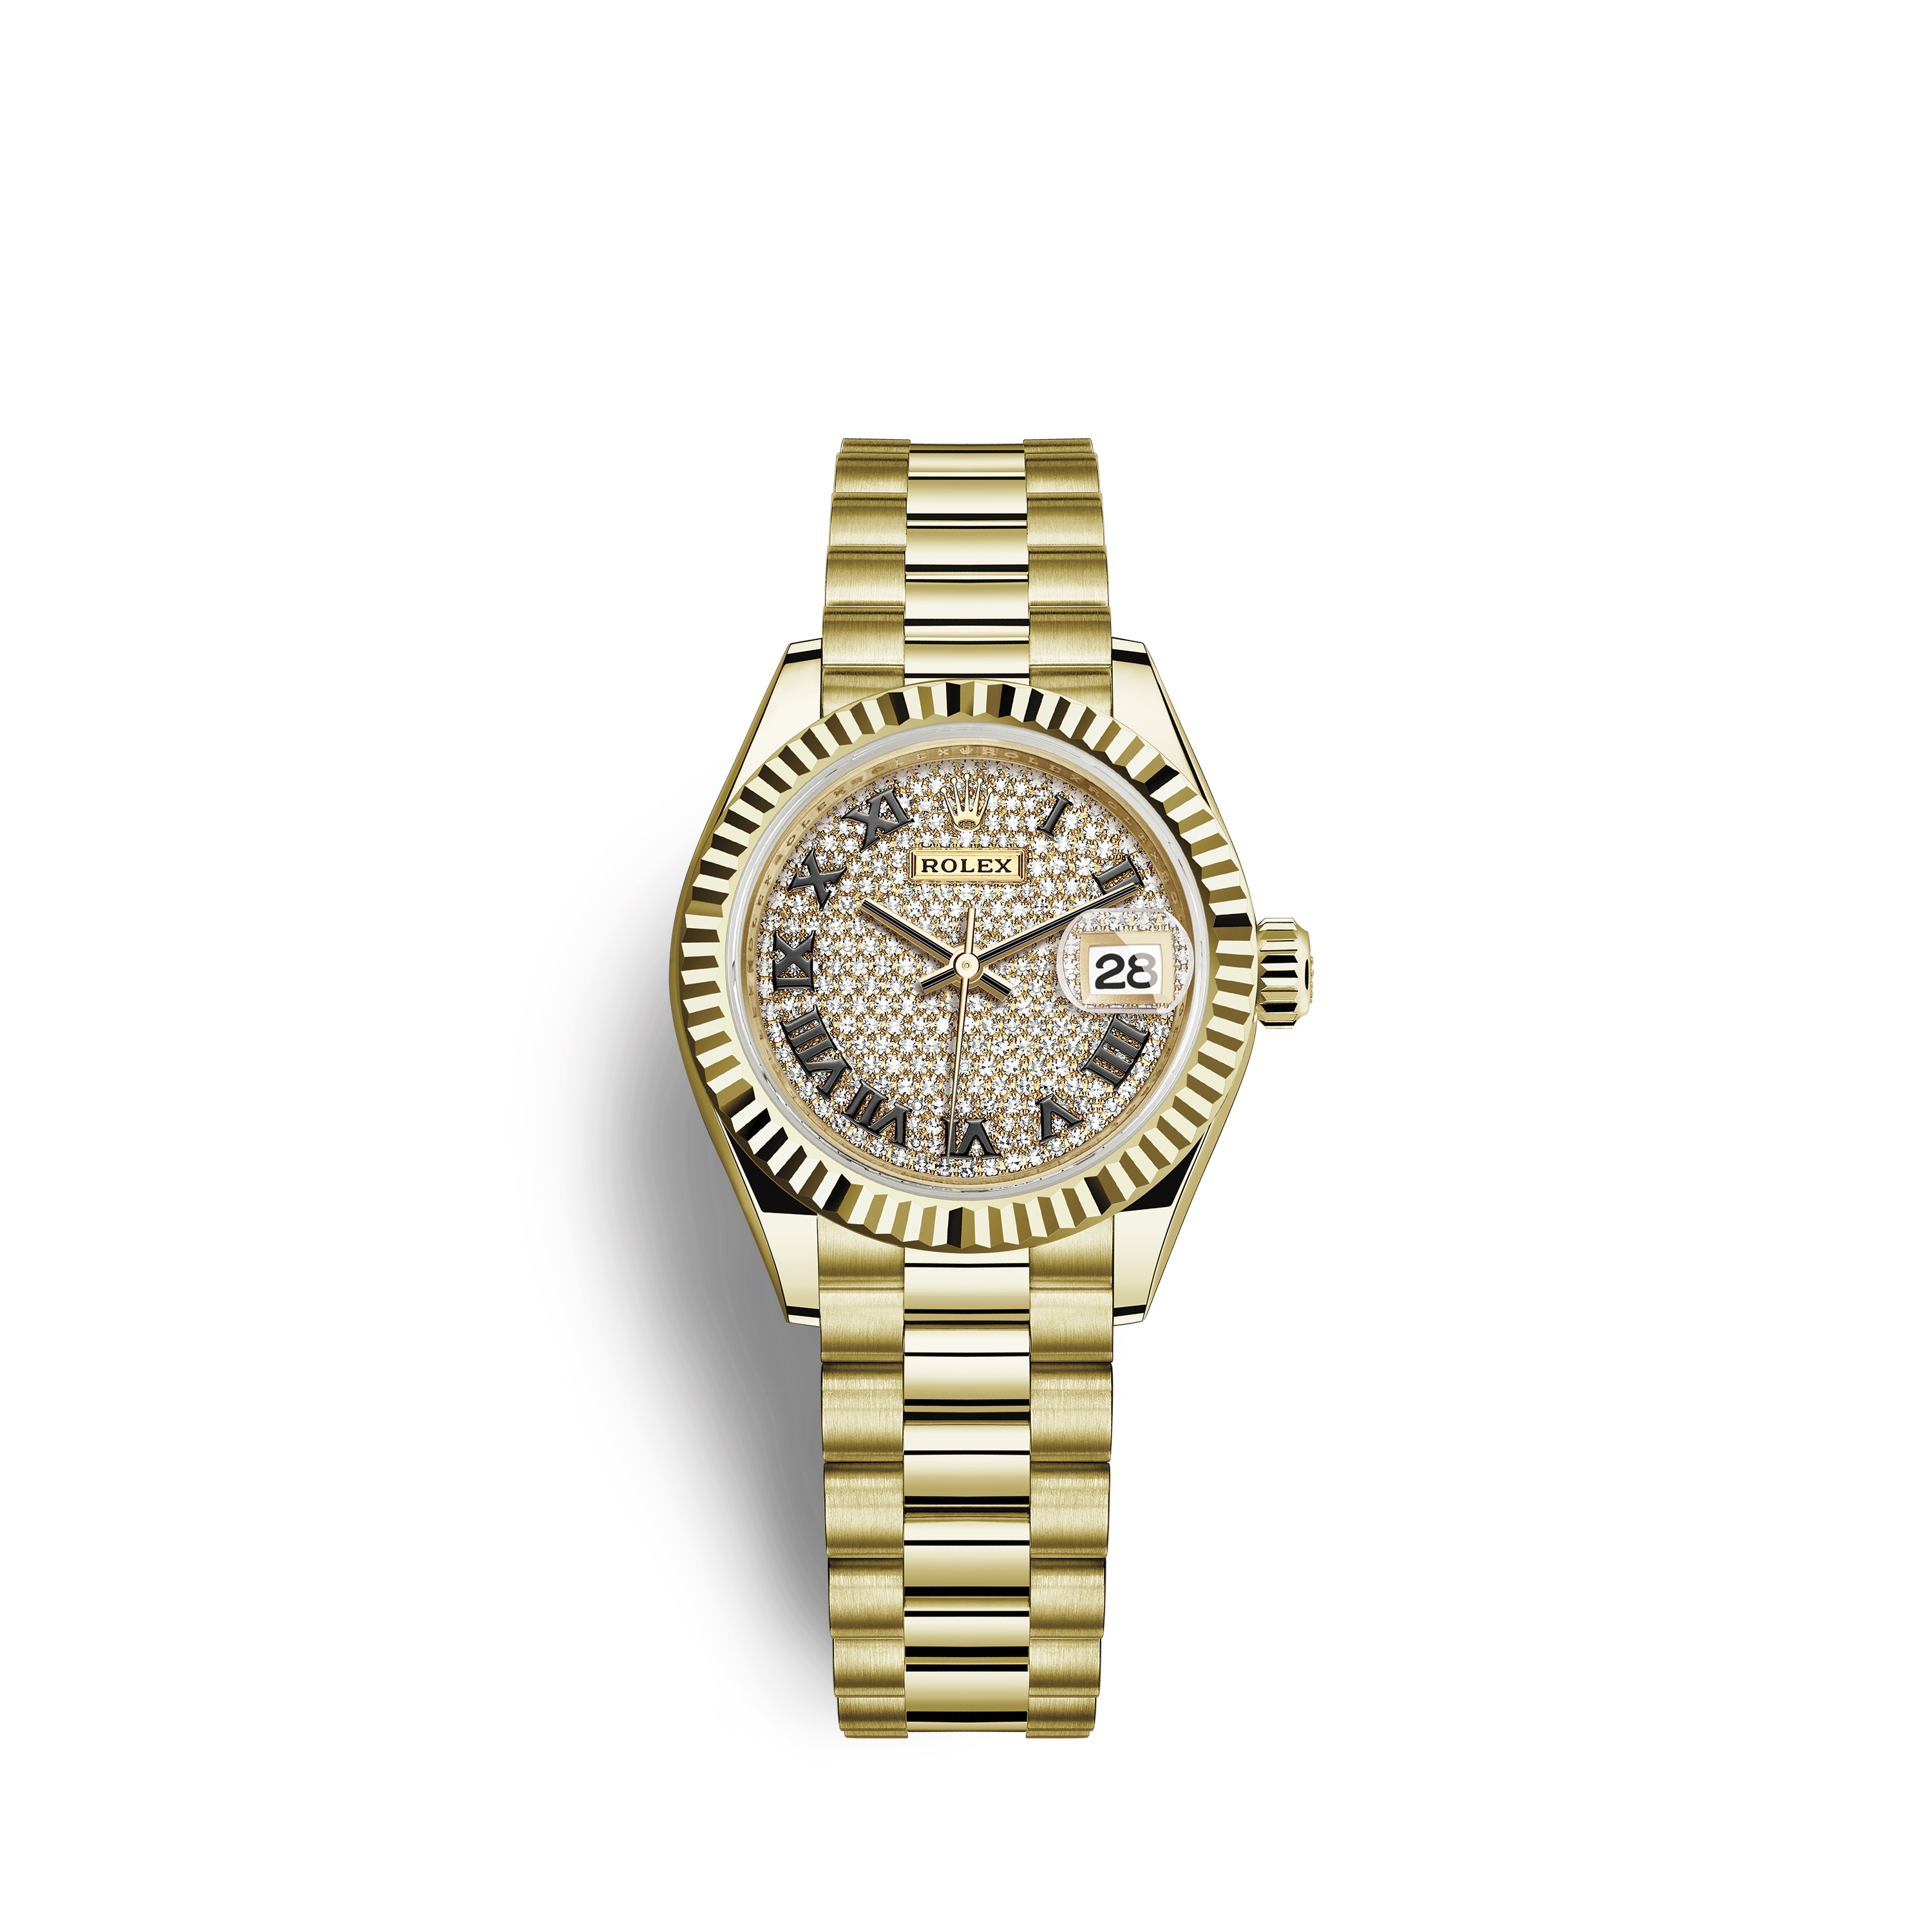 Lady-Datejust 28 279178 Gold Watch (Diamond-Paved)